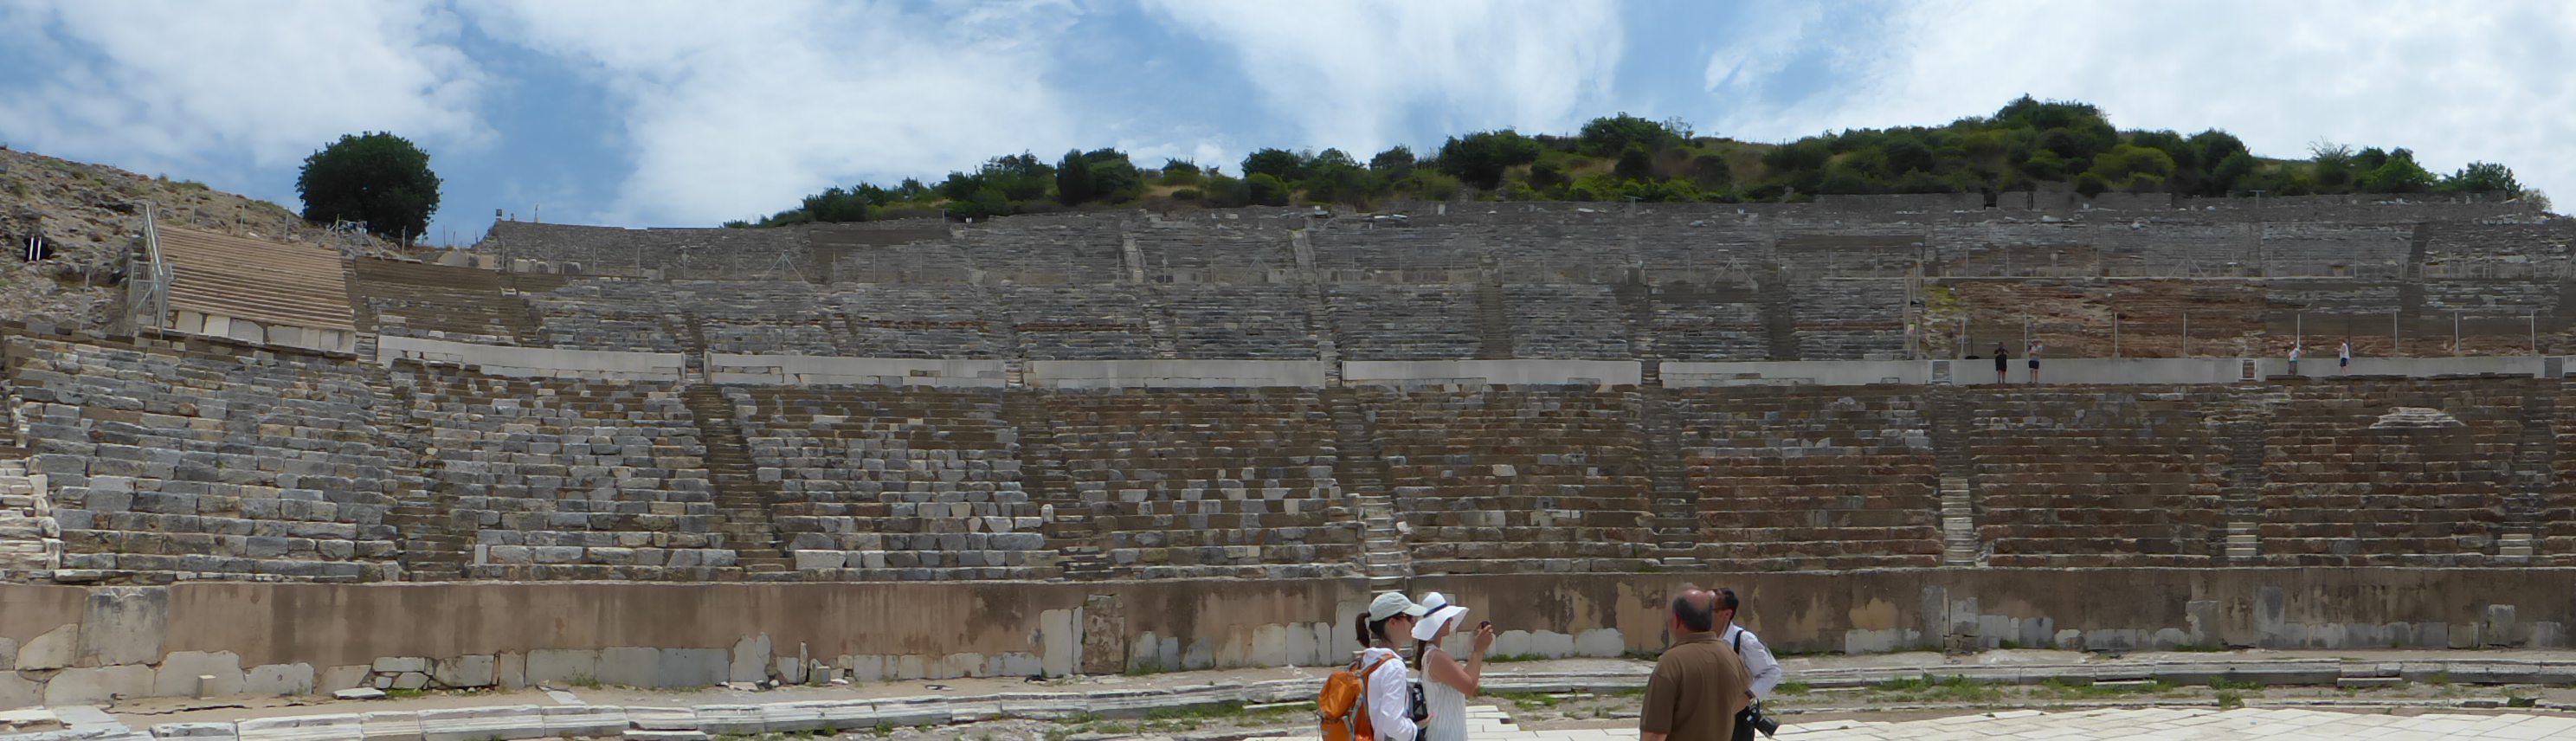 Im großen Theater von Ephesos soll der Apostel Paulus geredet haben.